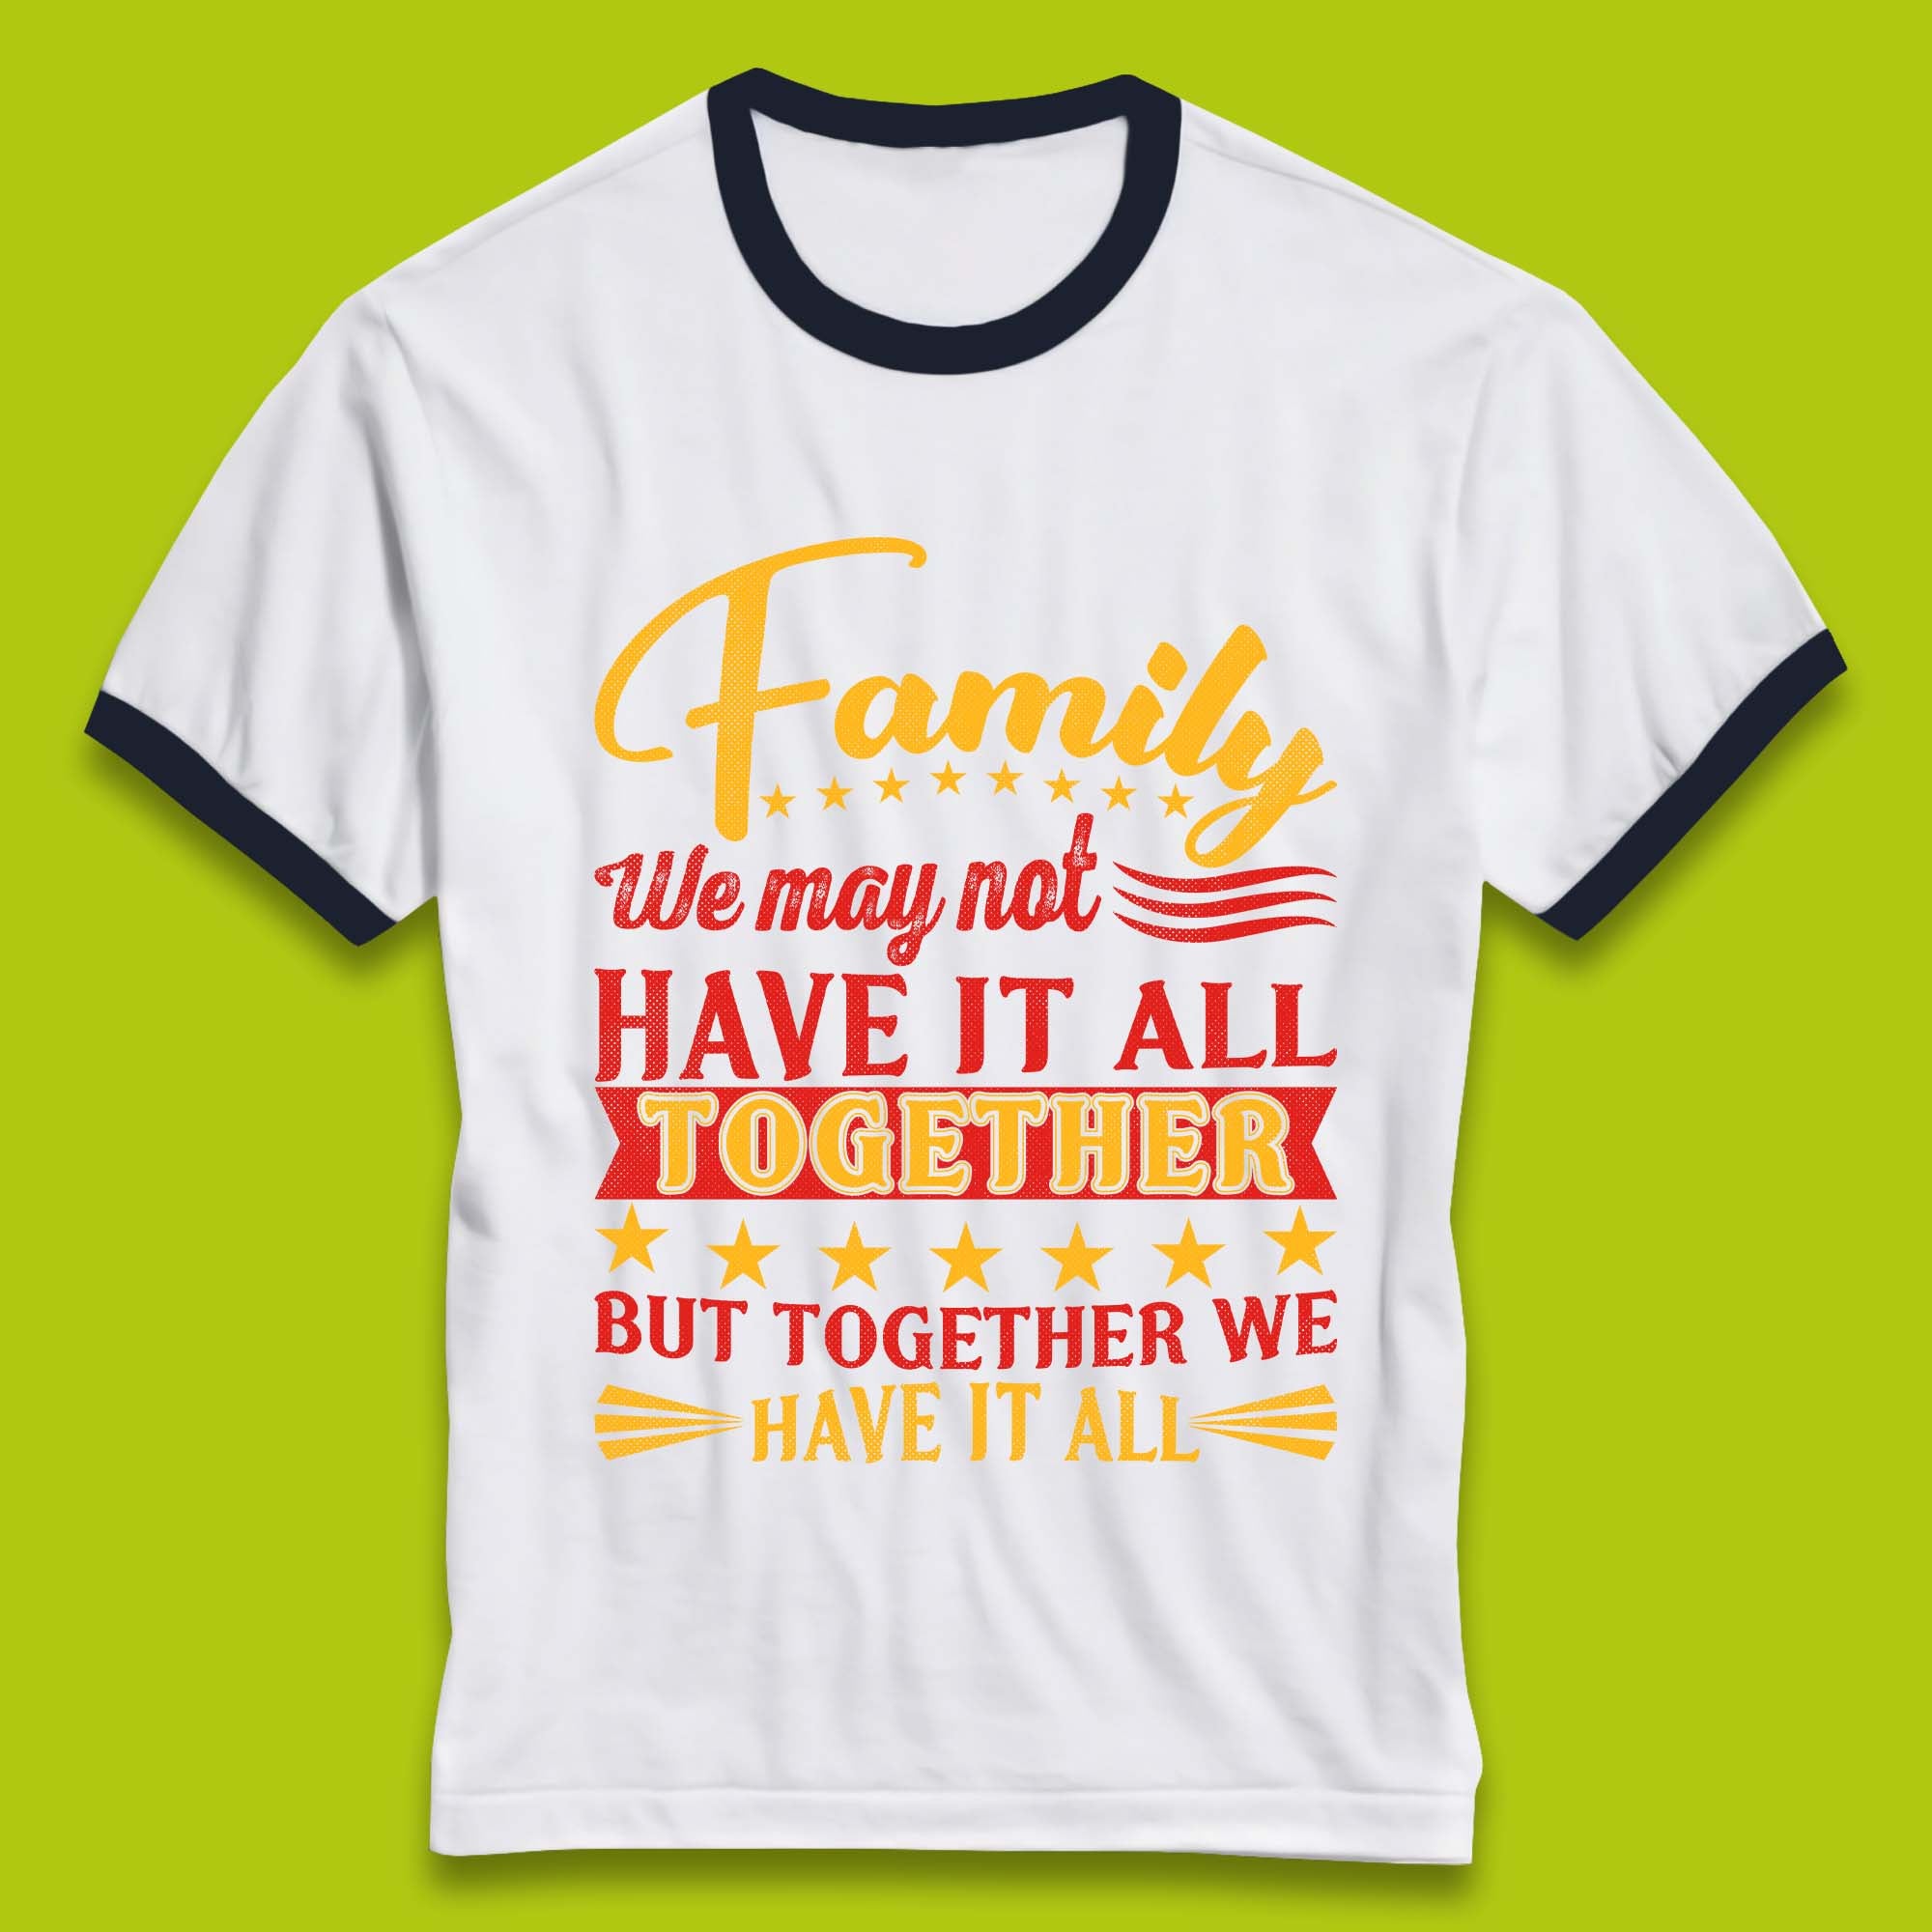 Family Reunion Ringer T-Shirt